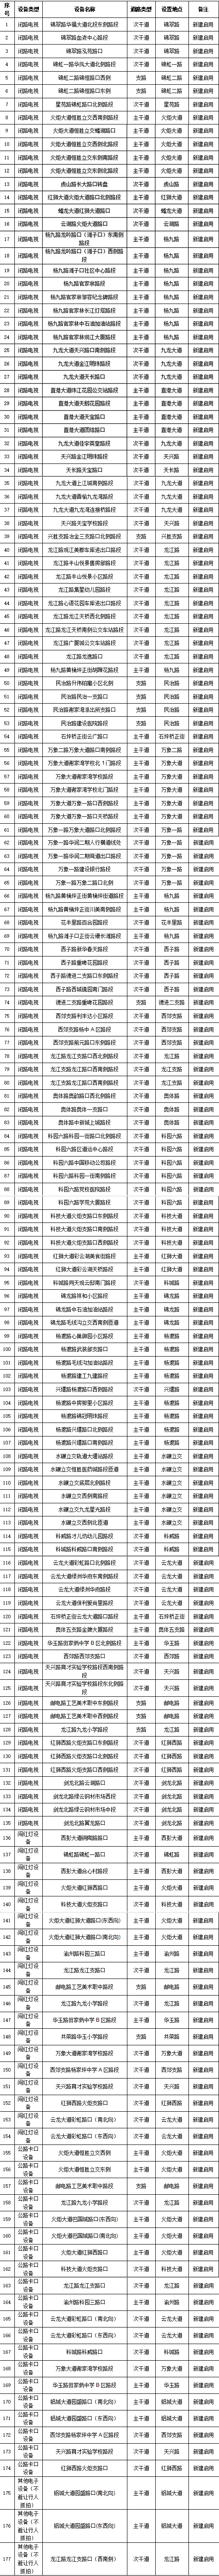 9月13日起 重庆市九龙坡区新增177处交通违法电子抓拍系统_fororder_图片1